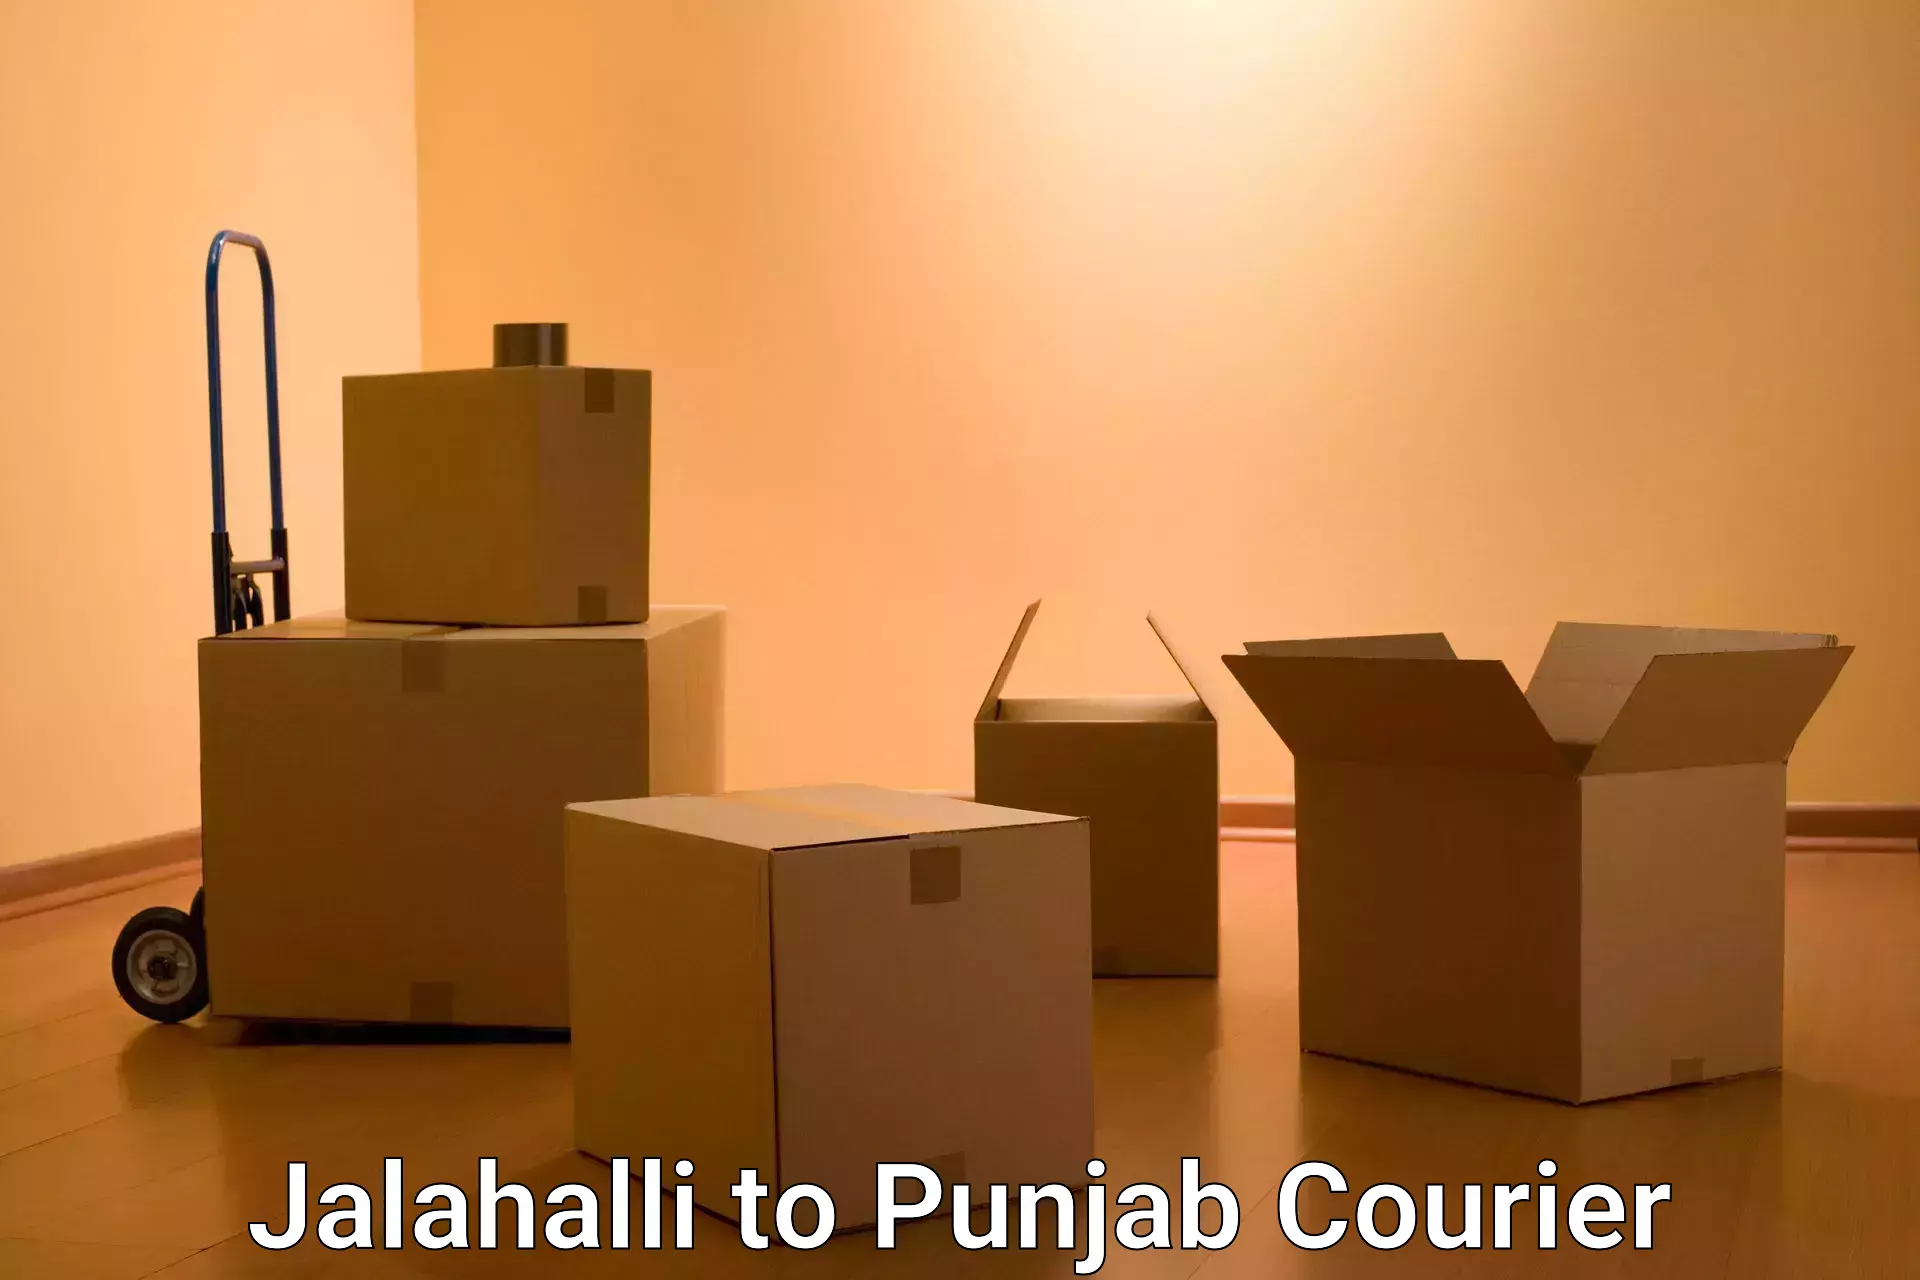 On-call courier service Jalahalli to Talwara